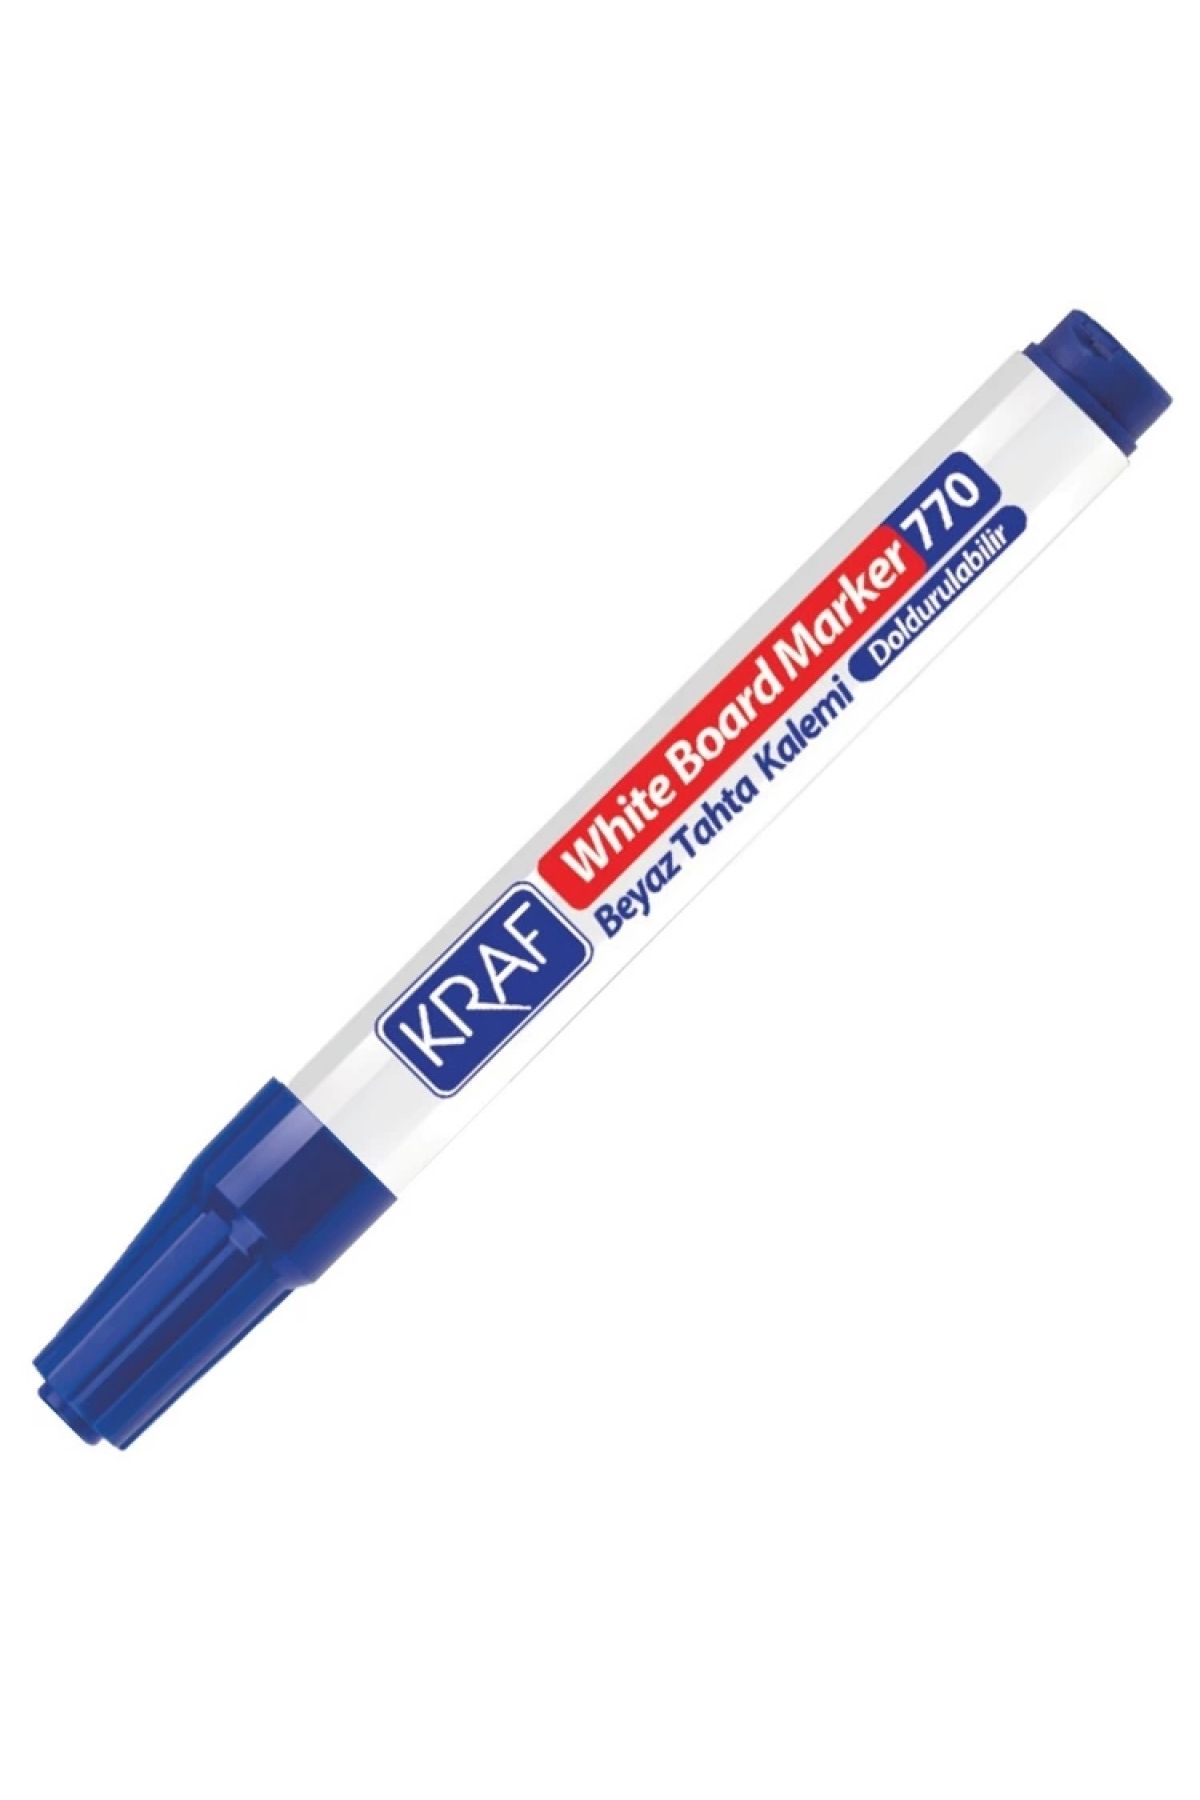 KRAF 770 Doldurulabilir Beyaz Tahta Kalemi - Mavi